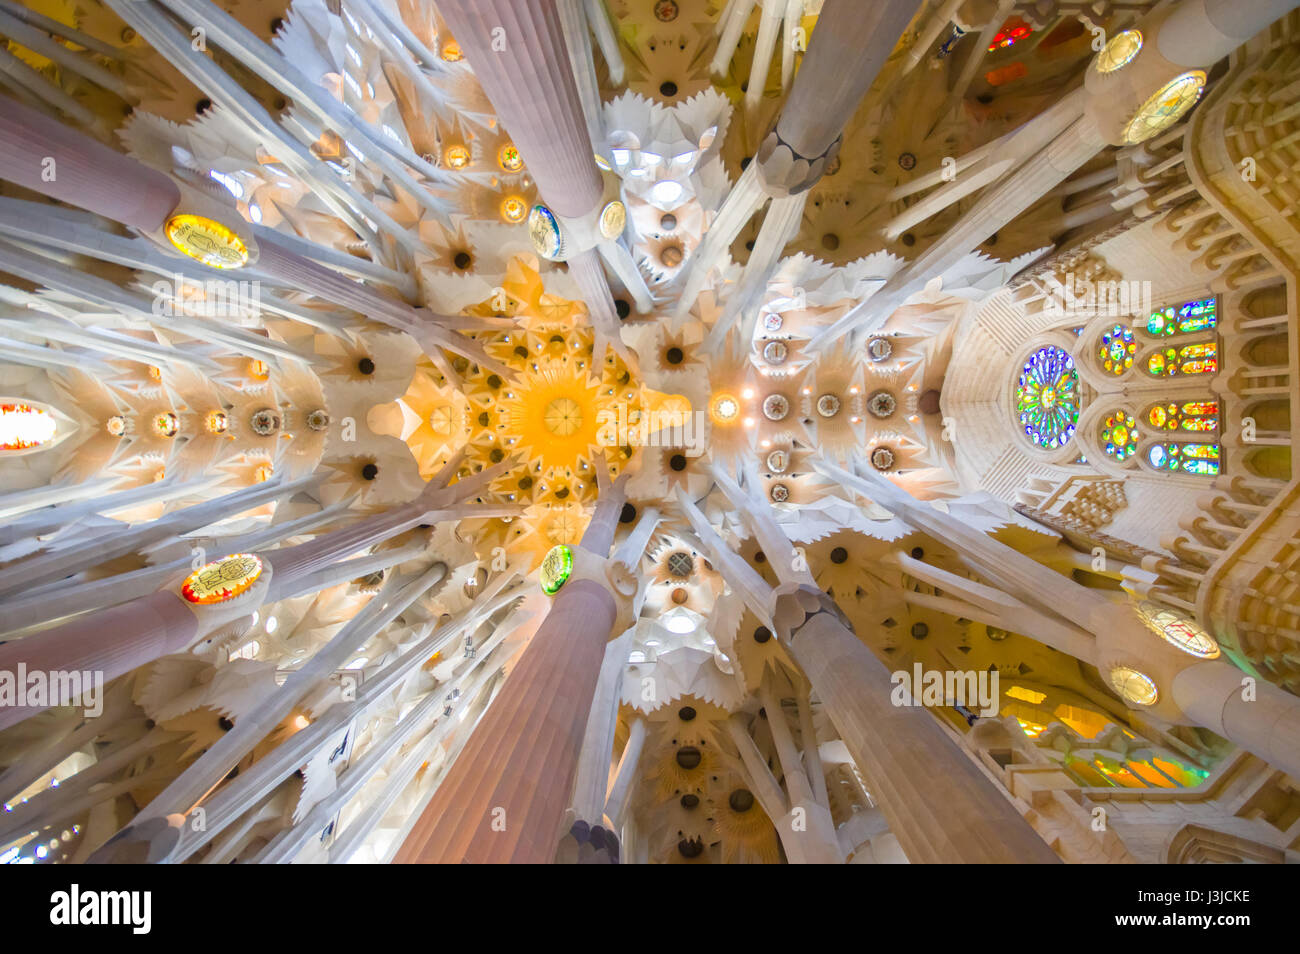 BARCELONA, Spanien - 8. August 2015: spektakuläre Barcelona Kirche La Sagrada Familia mit seinen beeindruckenden gotischen Details und einzigartige künstlerische Archite Stockfoto